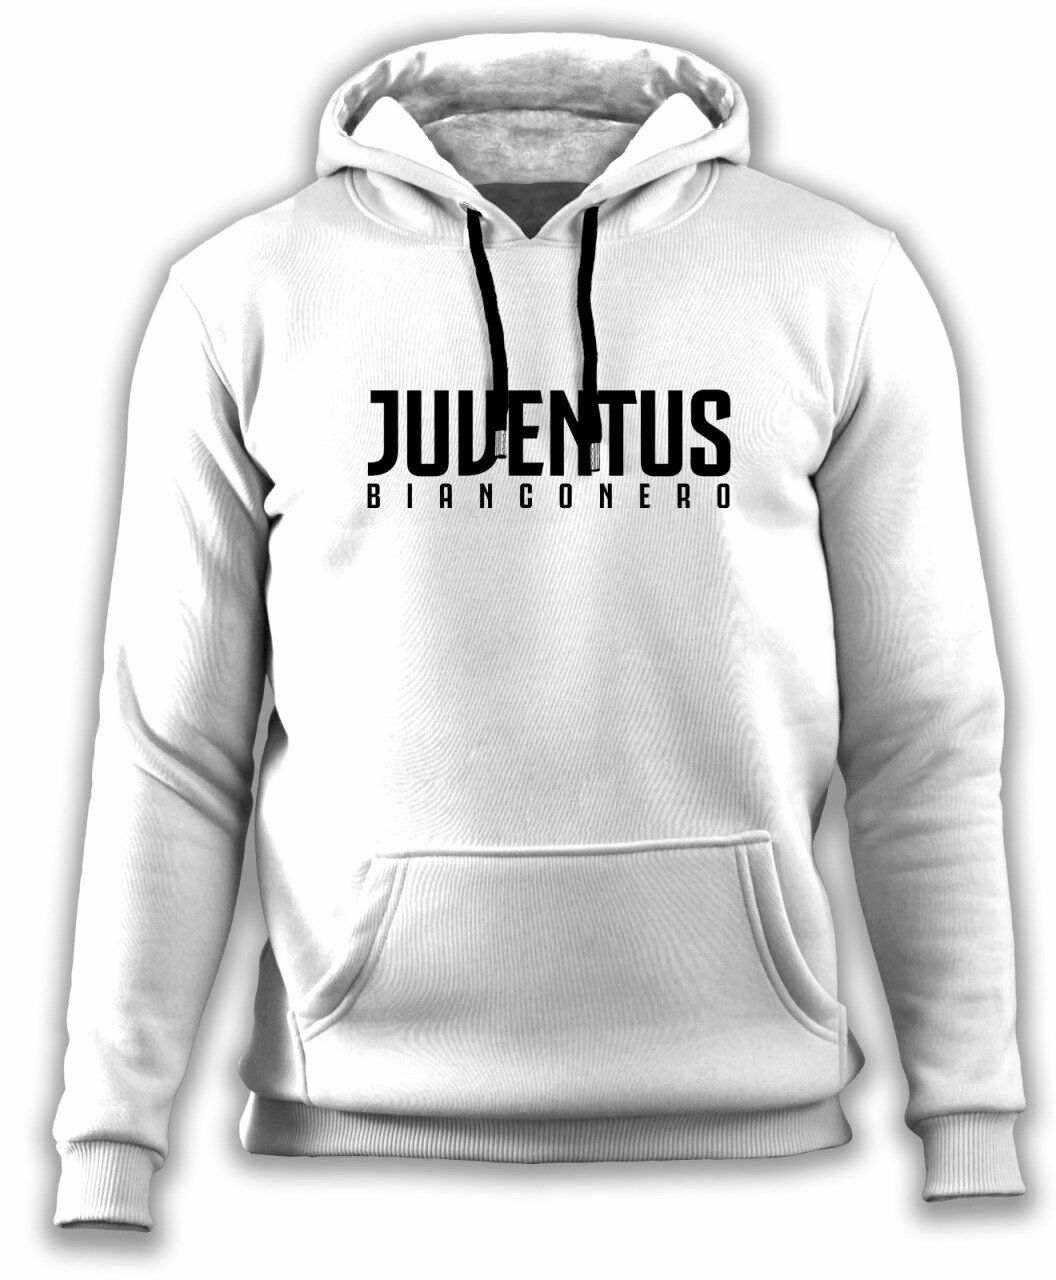 Juventus Bianconero Sweatshirt